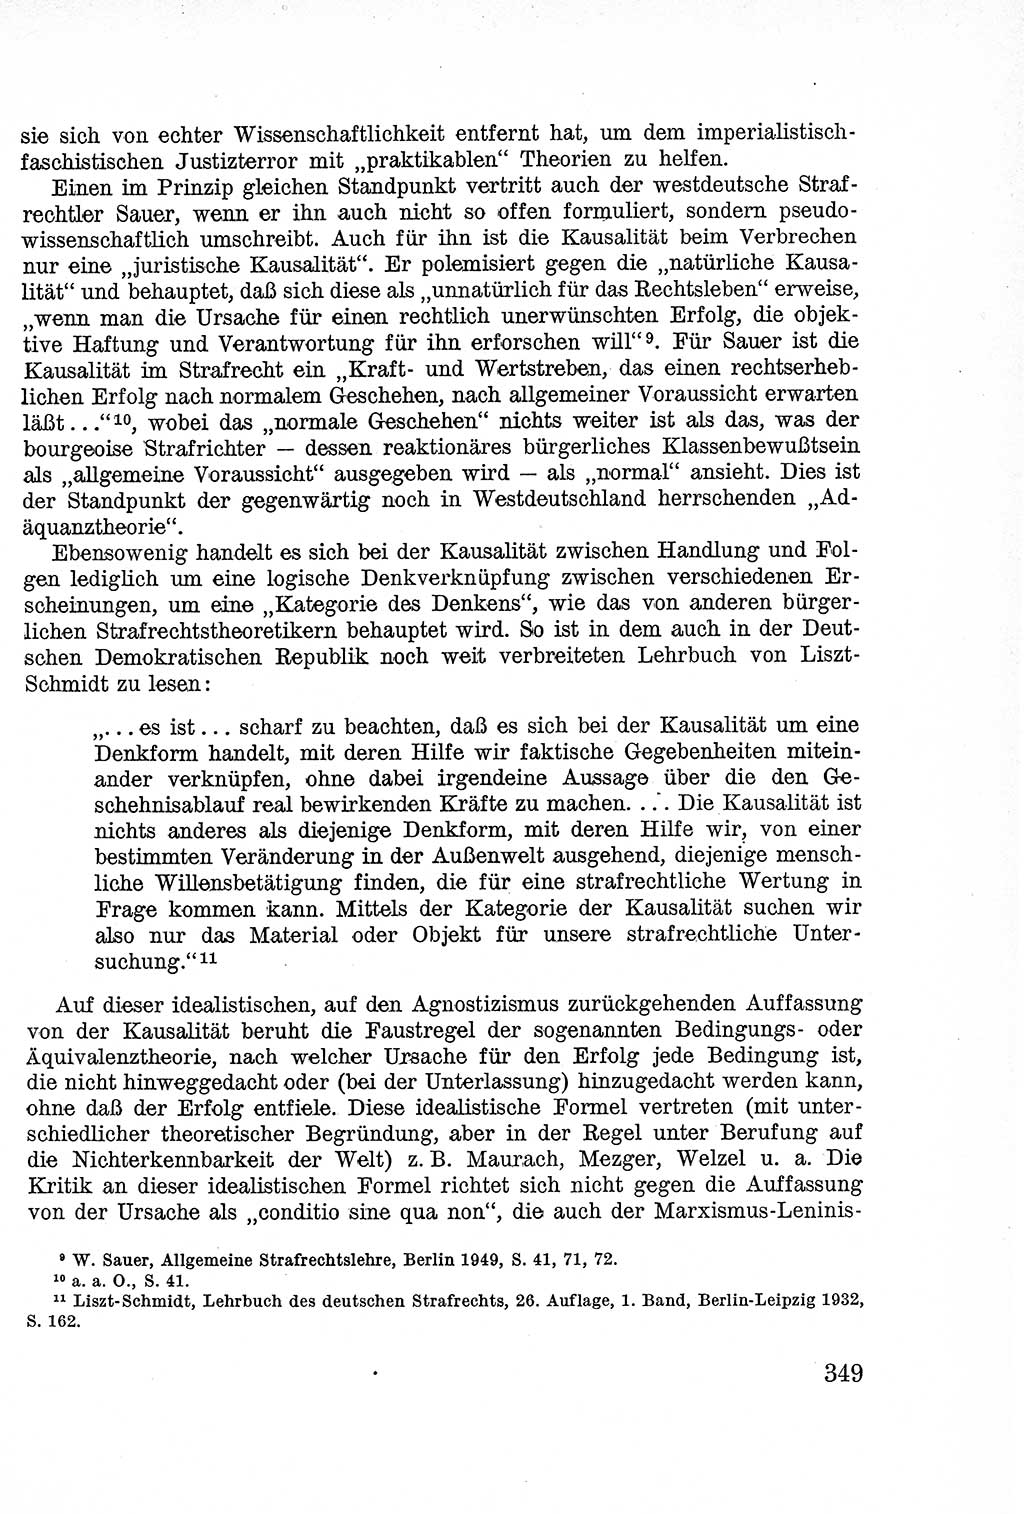 Lehrbuch des Strafrechts der Deutschen Demokratischen Republik (DDR), Allgemeiner Teil 1957, Seite 349 (Lb. Strafr. DDR AT 1957, S. 349)